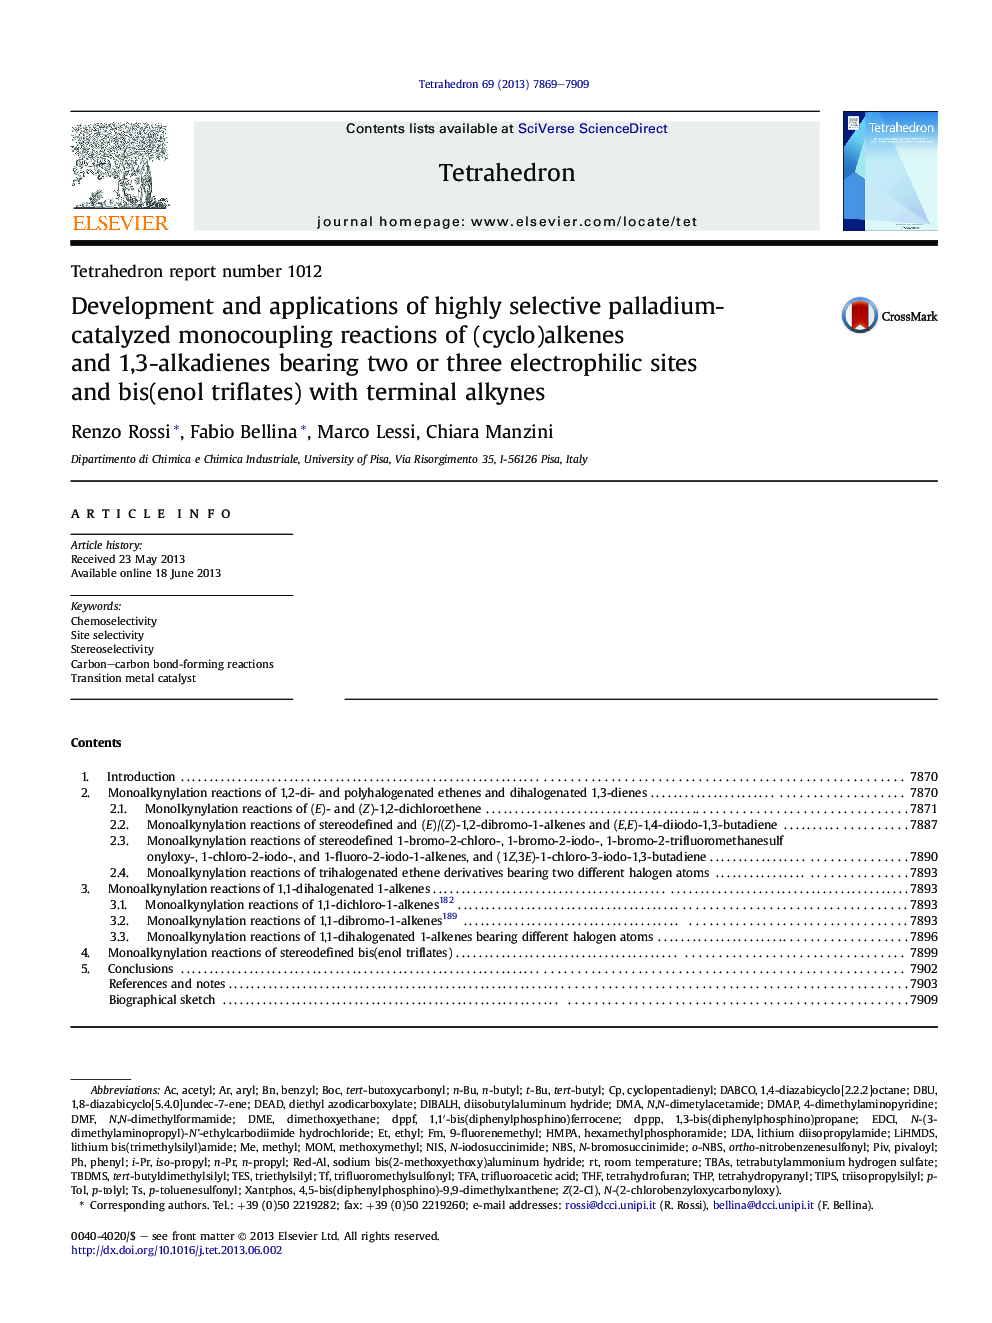 گزارش تیتاگرام شماره 1012 توسعه و کاربرد واکنشهای تک واکنشی (سیکلو) آلکین ها و 1،3-کلایدیین های دارای پالادیم کاتالیز شده با دو یا سه محل الکتروفایل و بیس (آنول تری فلات) با آلکین های ترمینال 